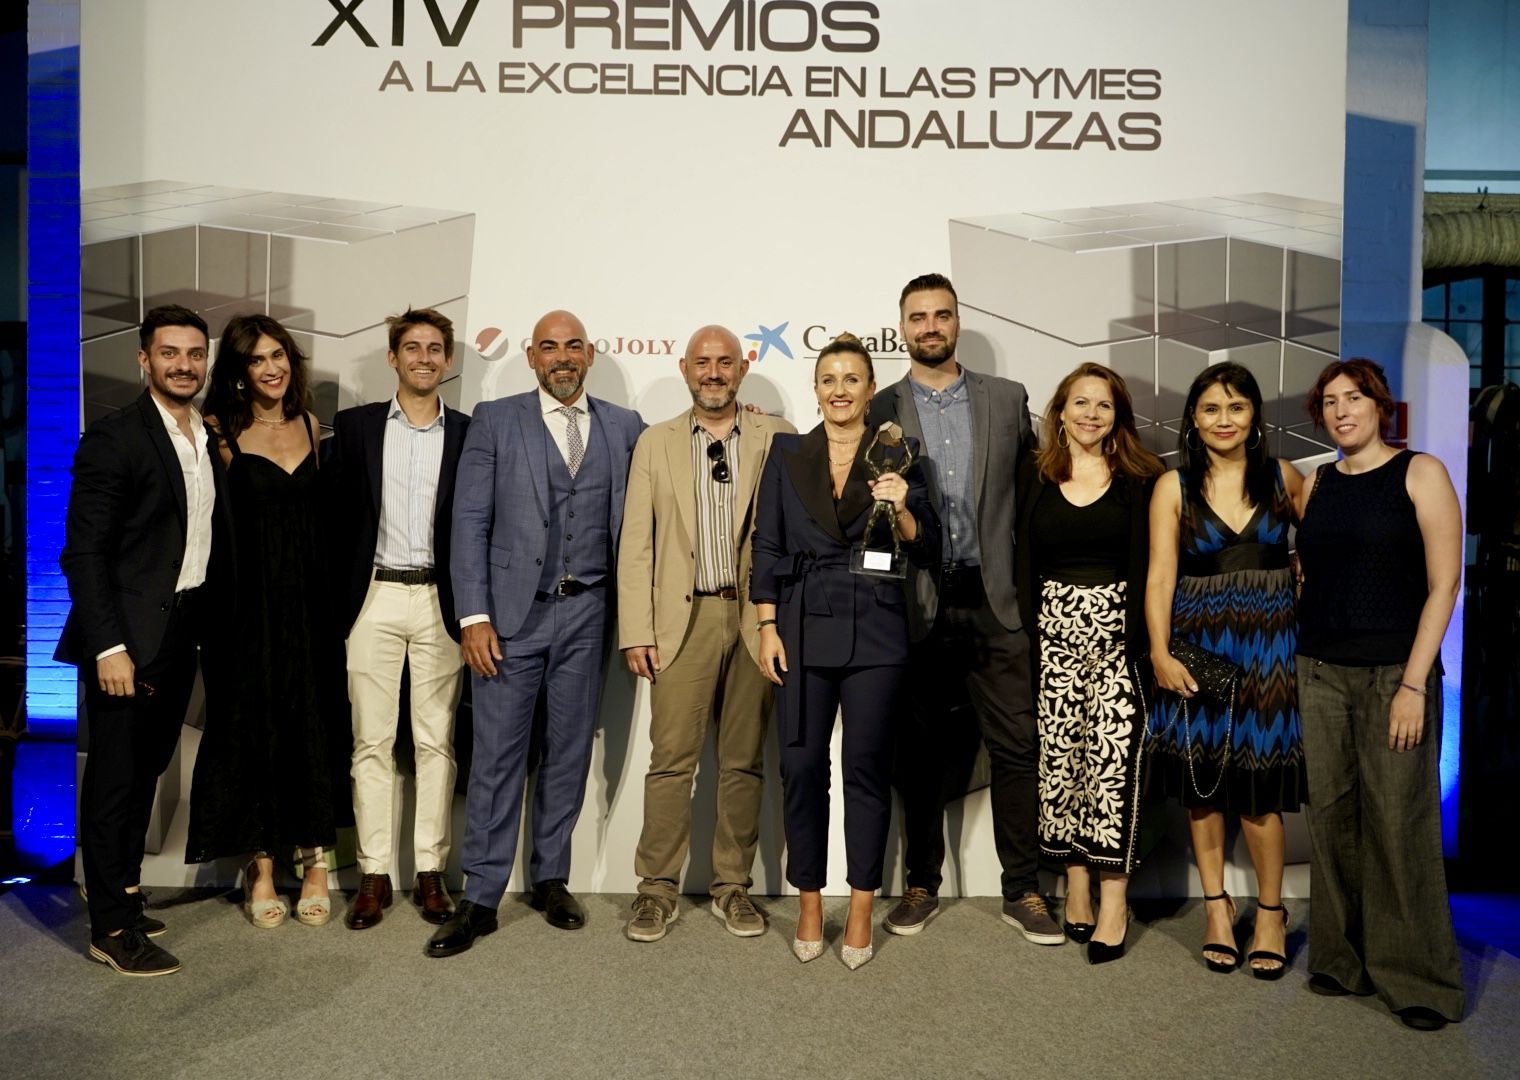 Media Interactiva se alza como ganadora en los XIV Premios a la Excelencia en las PYMES Andaluzas 